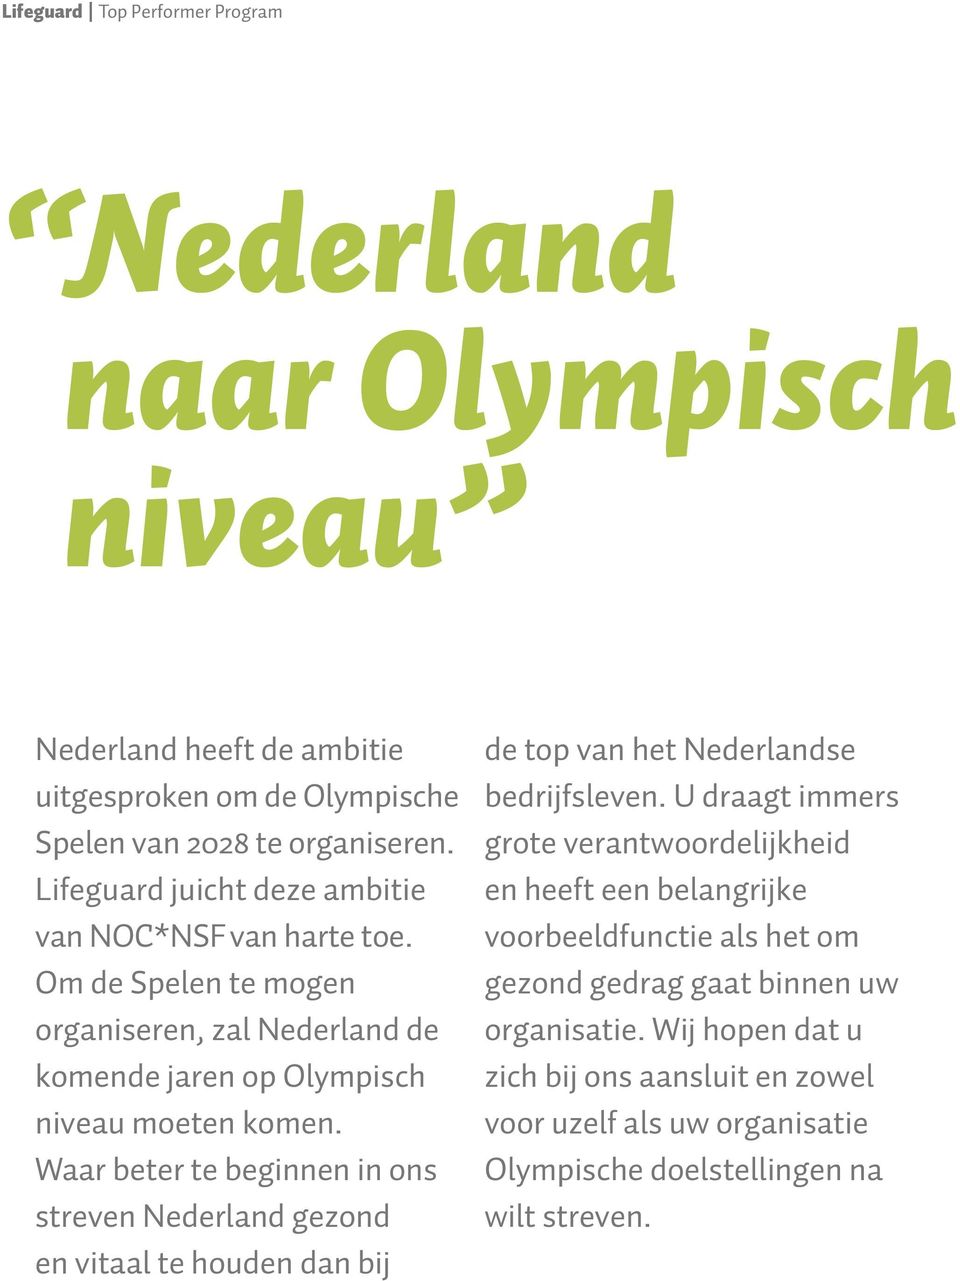 Waar beter te beginnen in ons streven Nederland gezond en vitaal te houden dan bij de top van het Nederlandse bedrijfsleven.